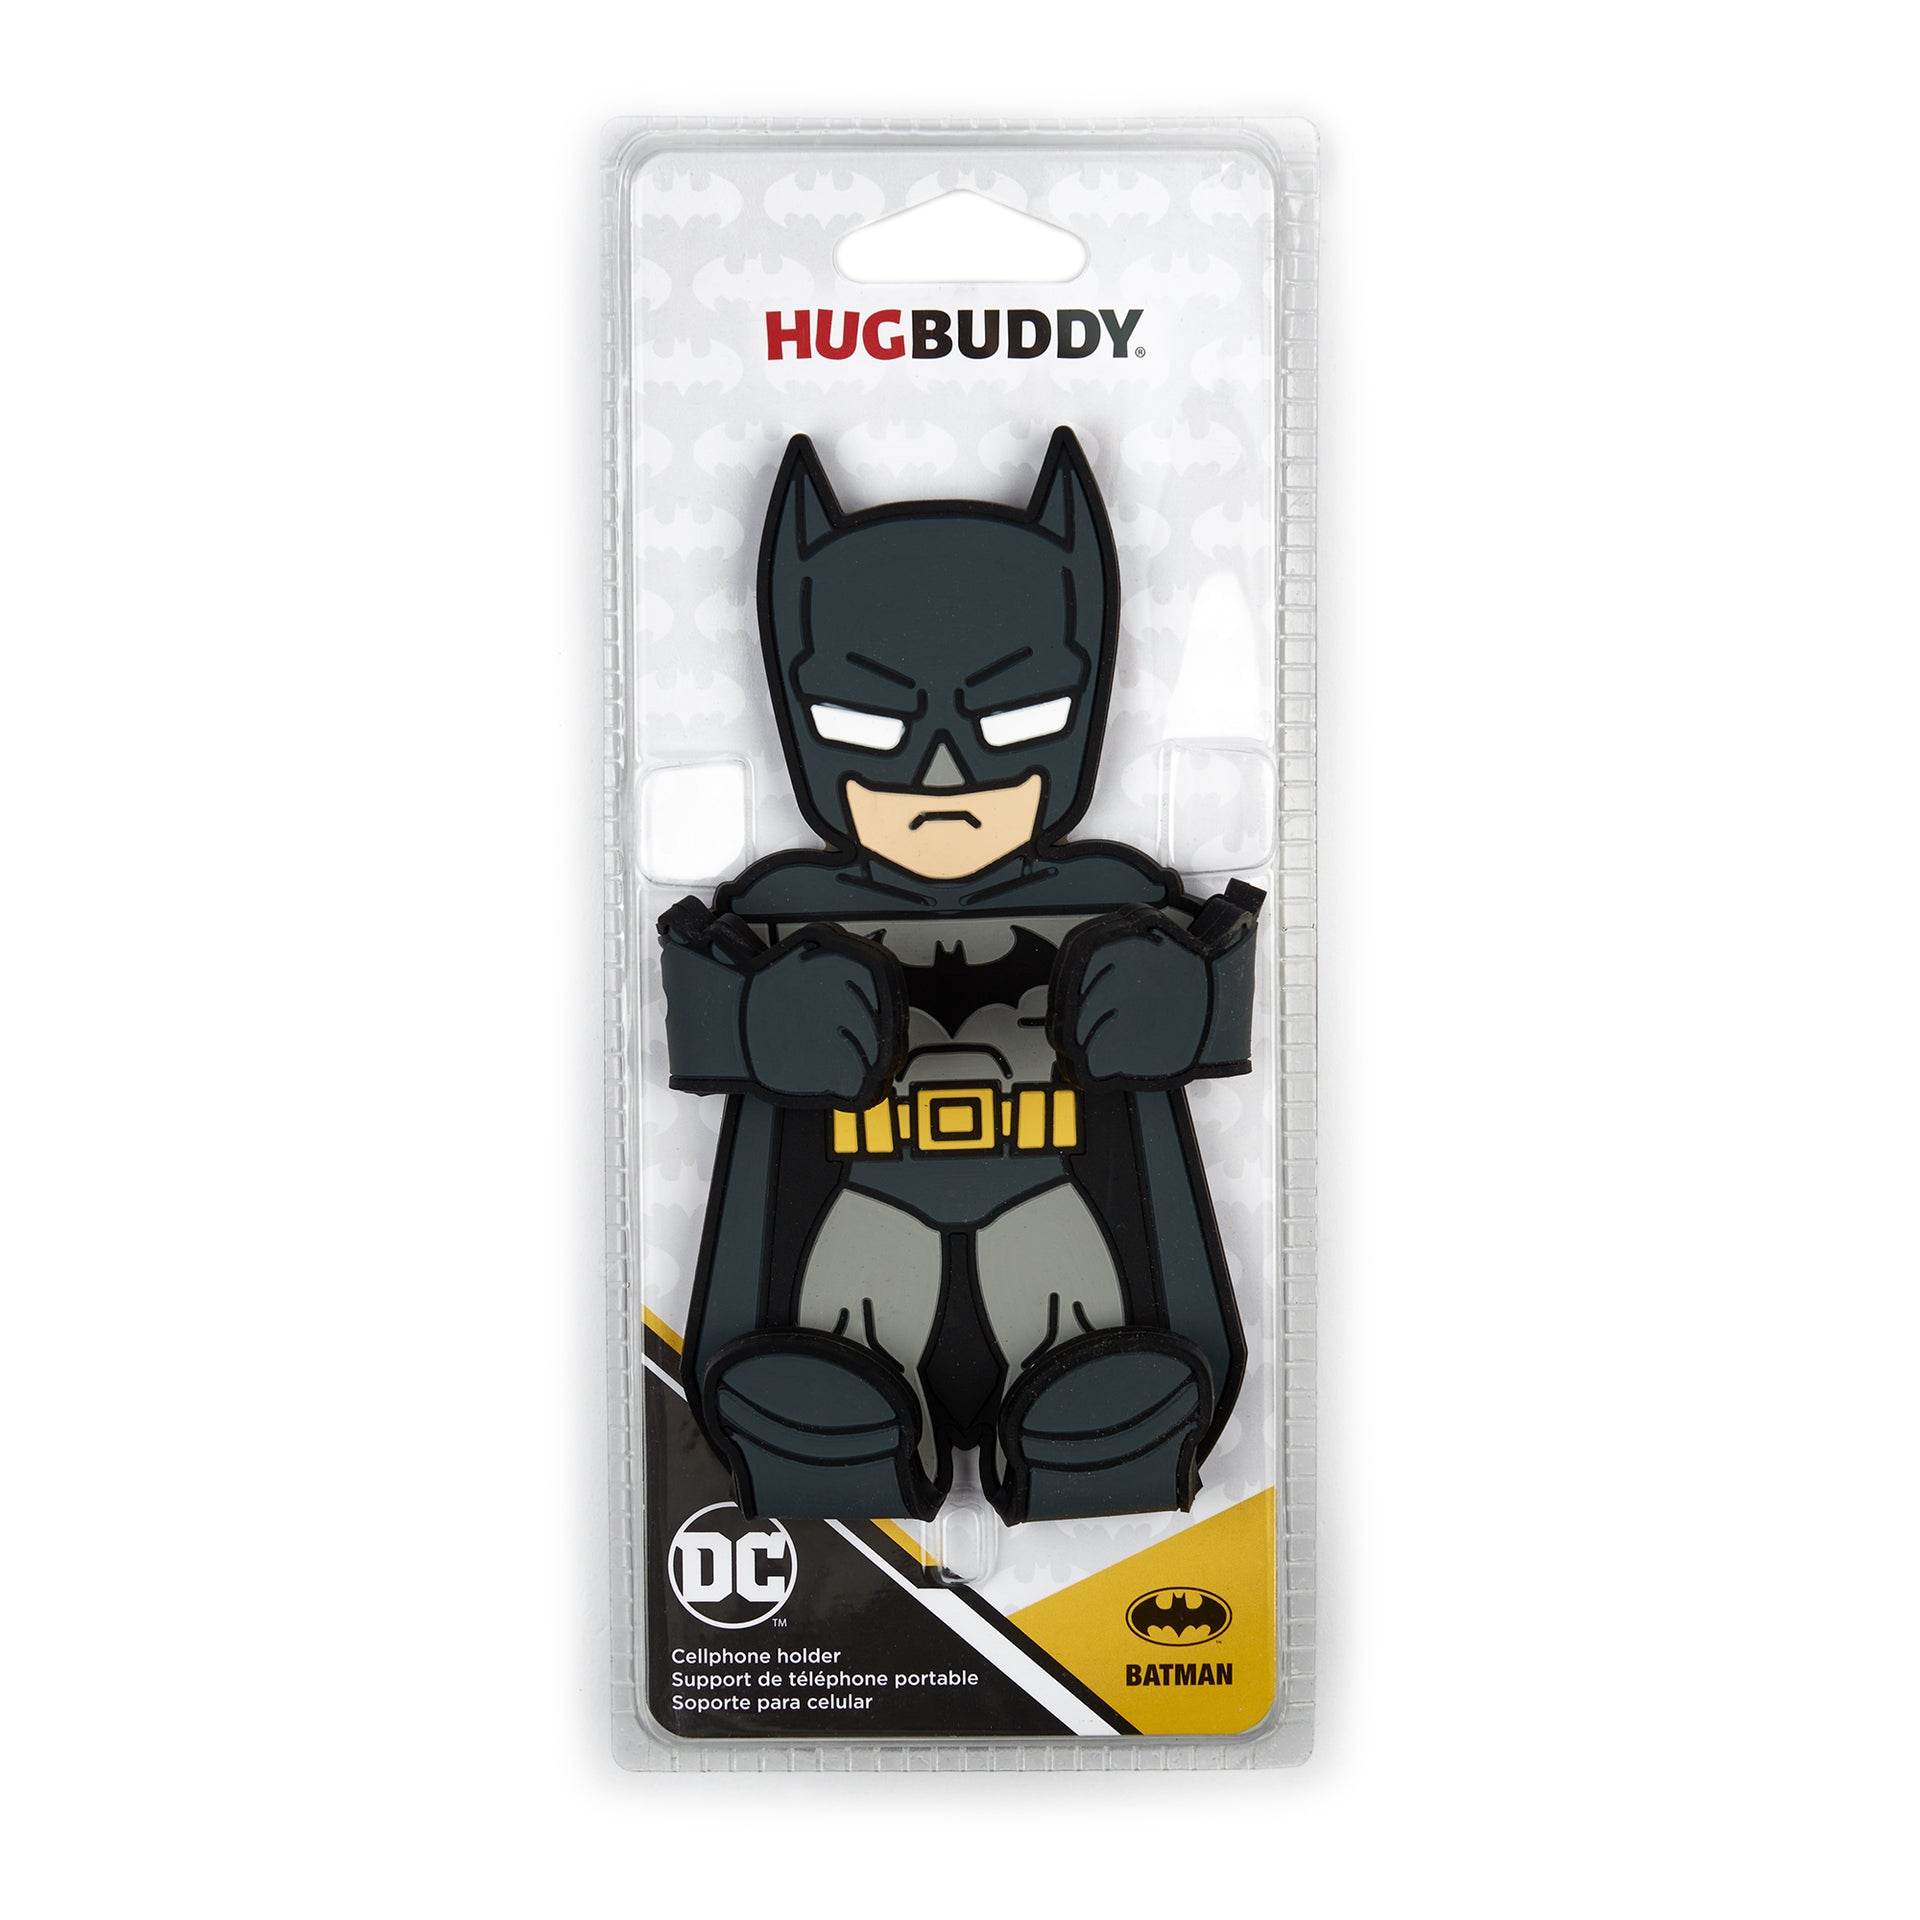 Image of Batman Hug Buddy packaging